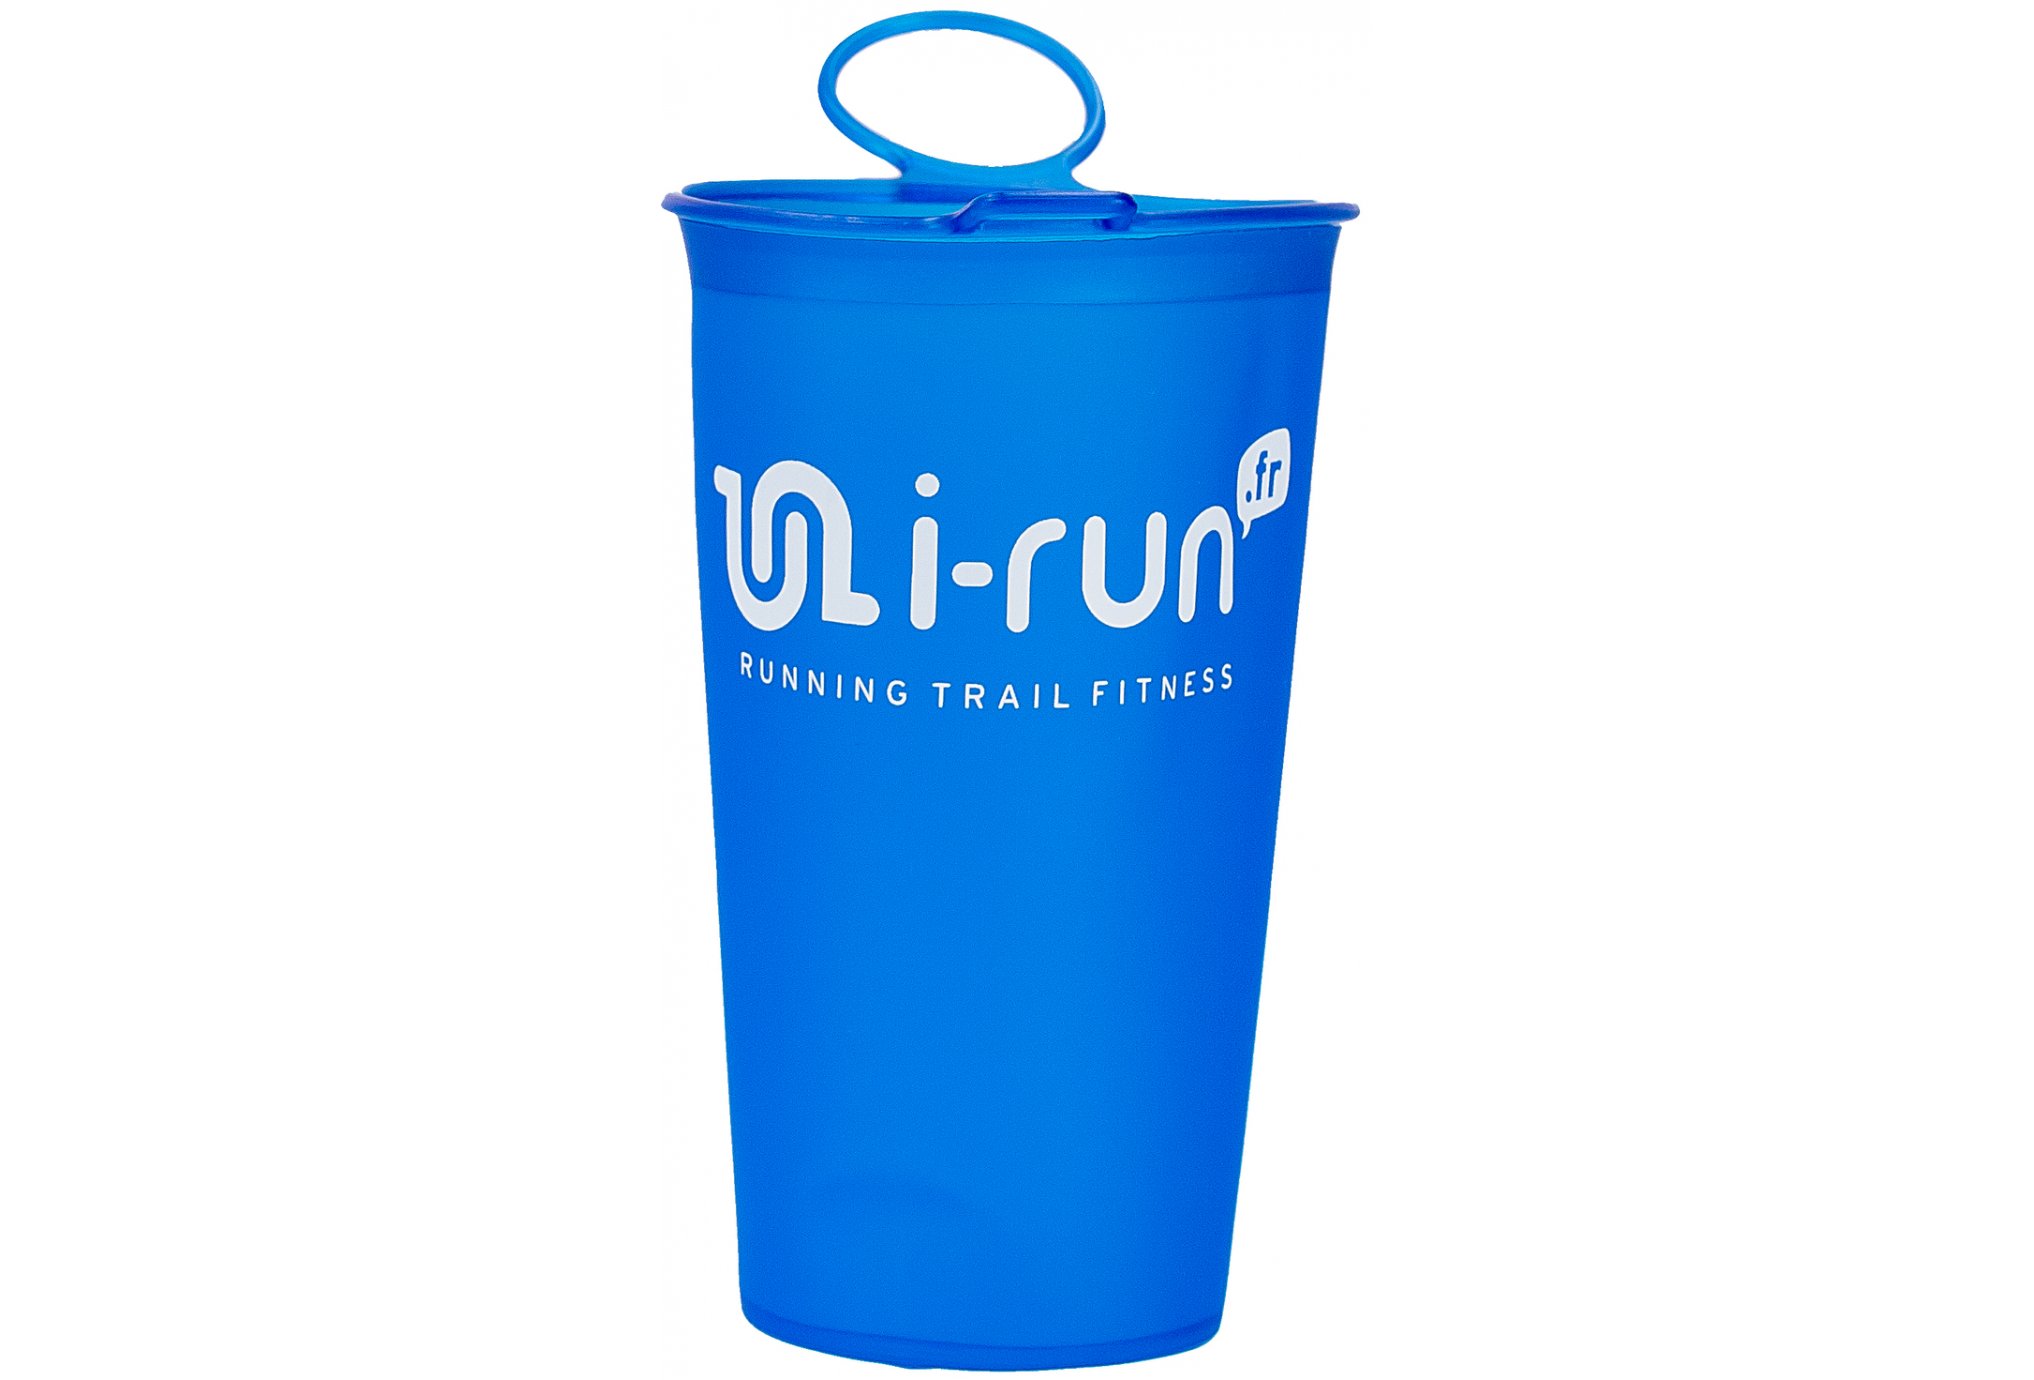 i-run.fr Soft Cup i-Run.fr 200mL Sac hydratation / Gourde